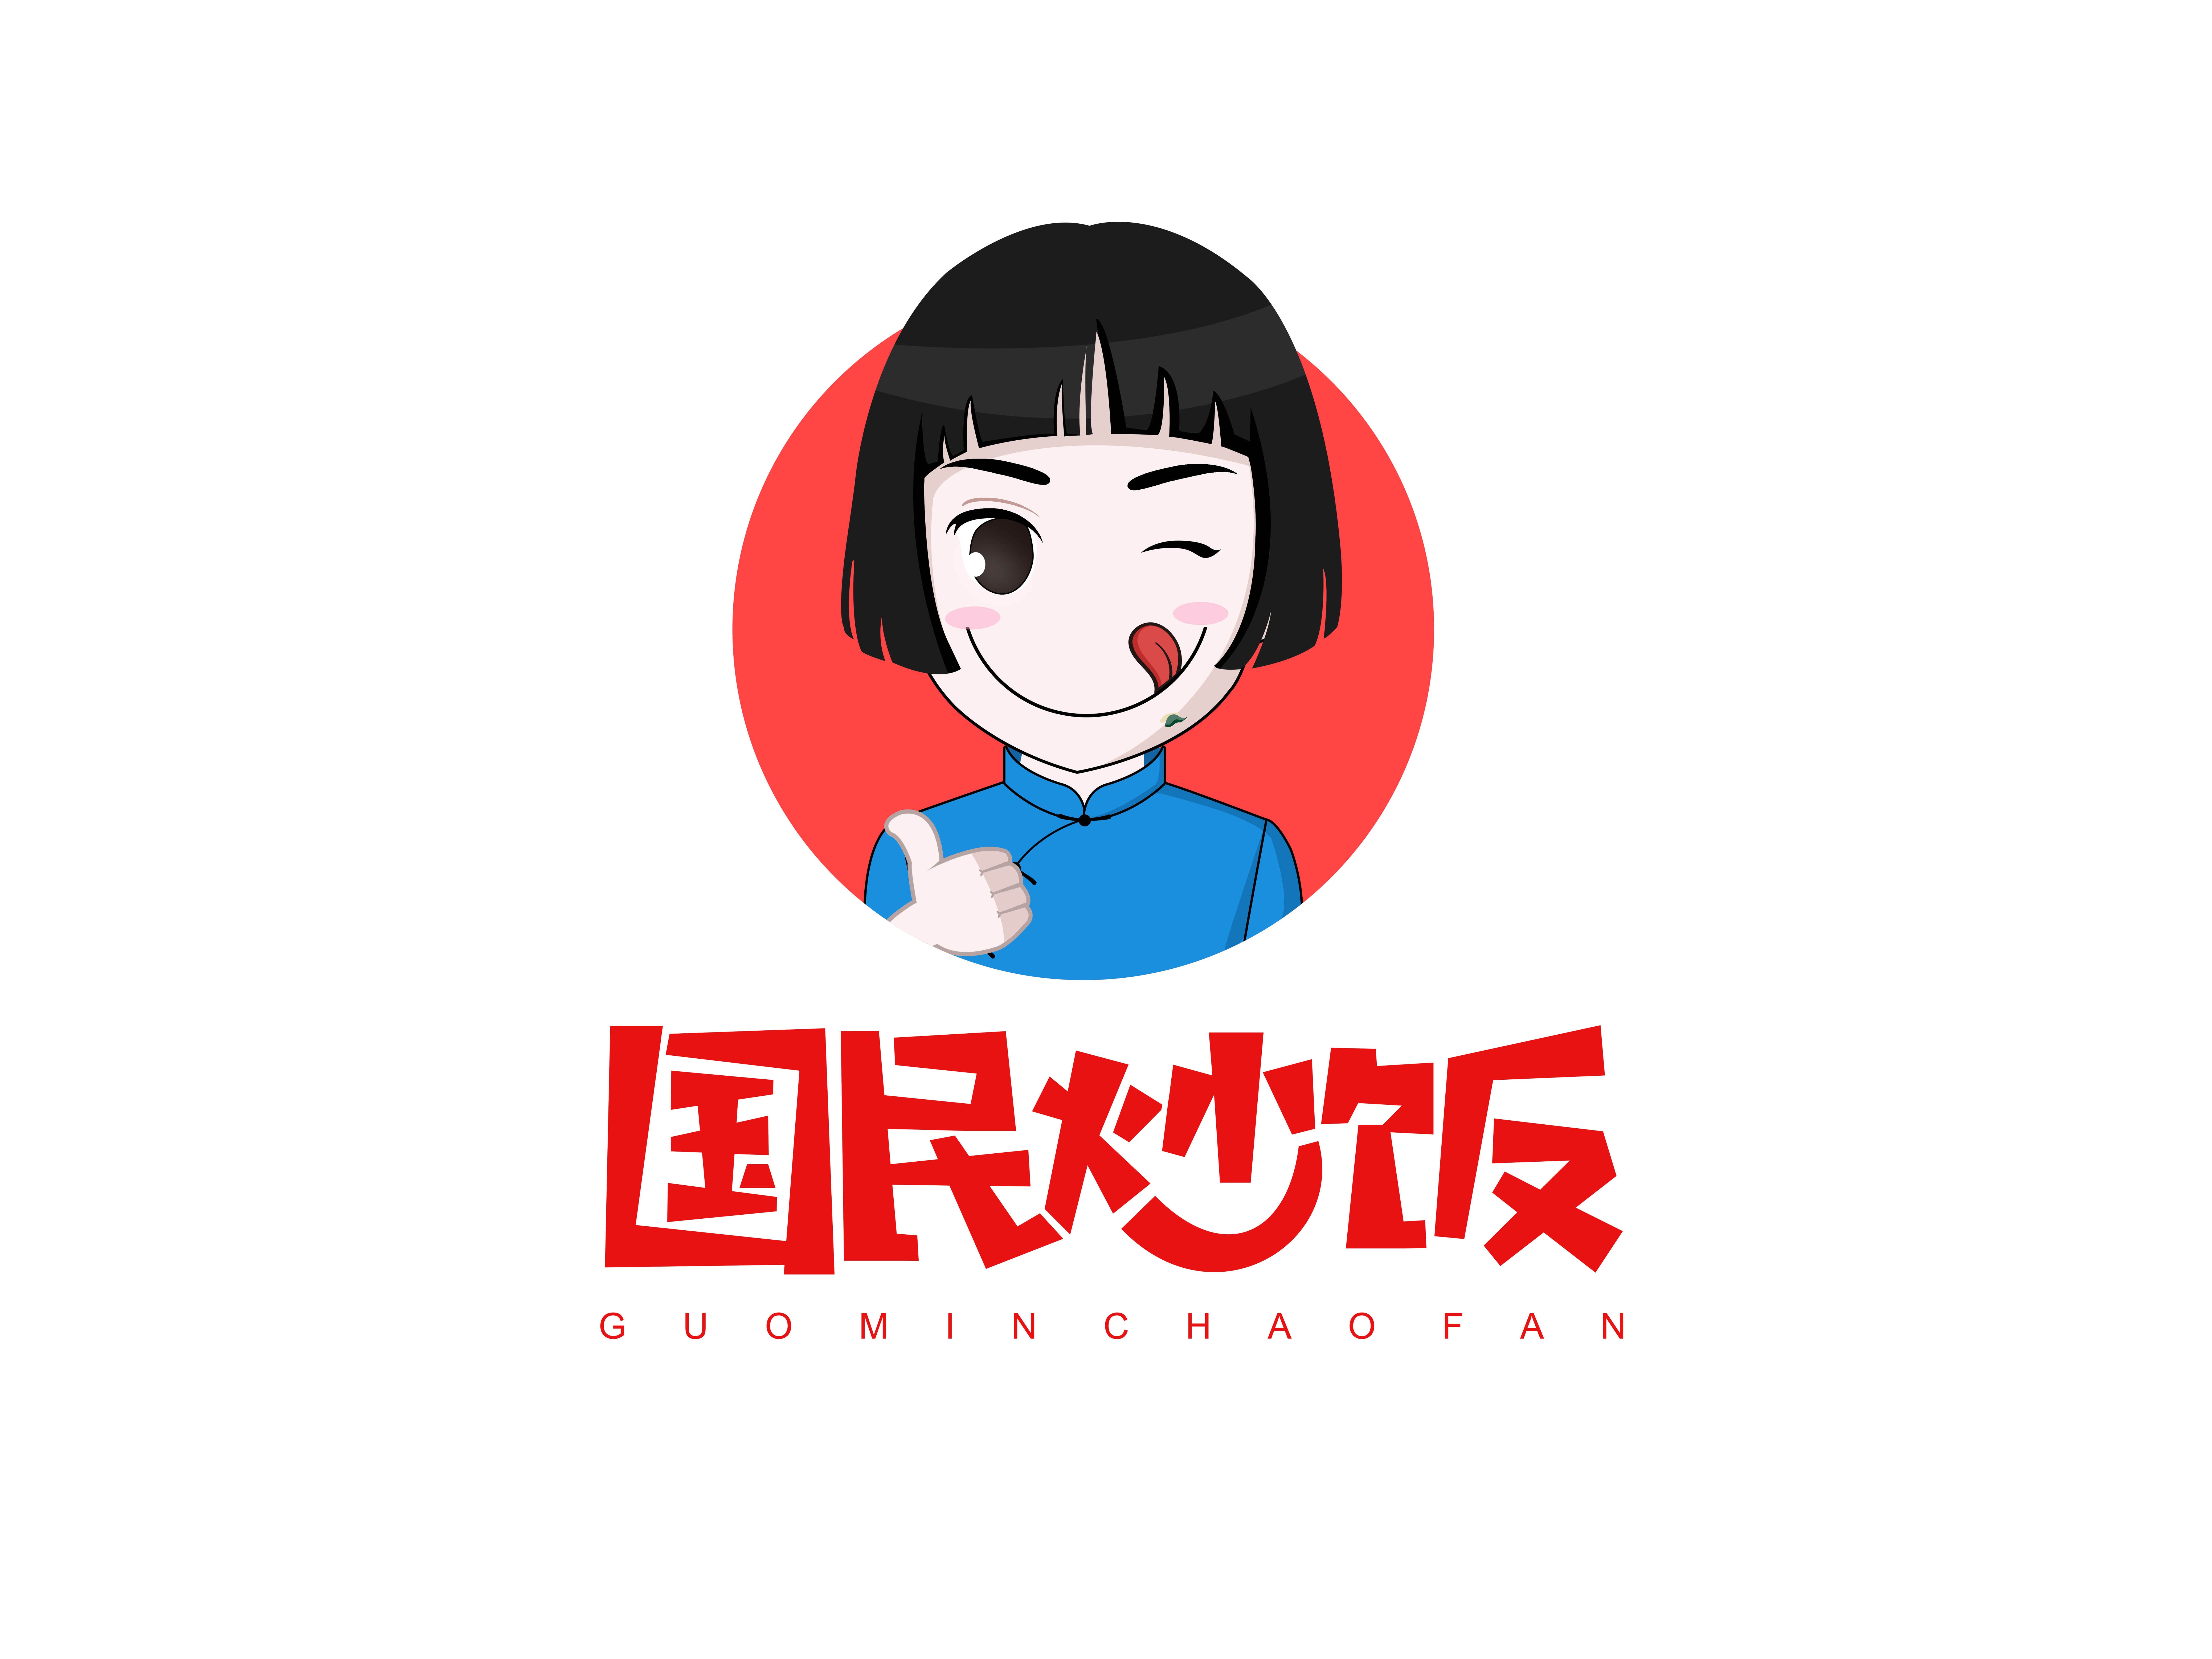 国民炒饭logo设计